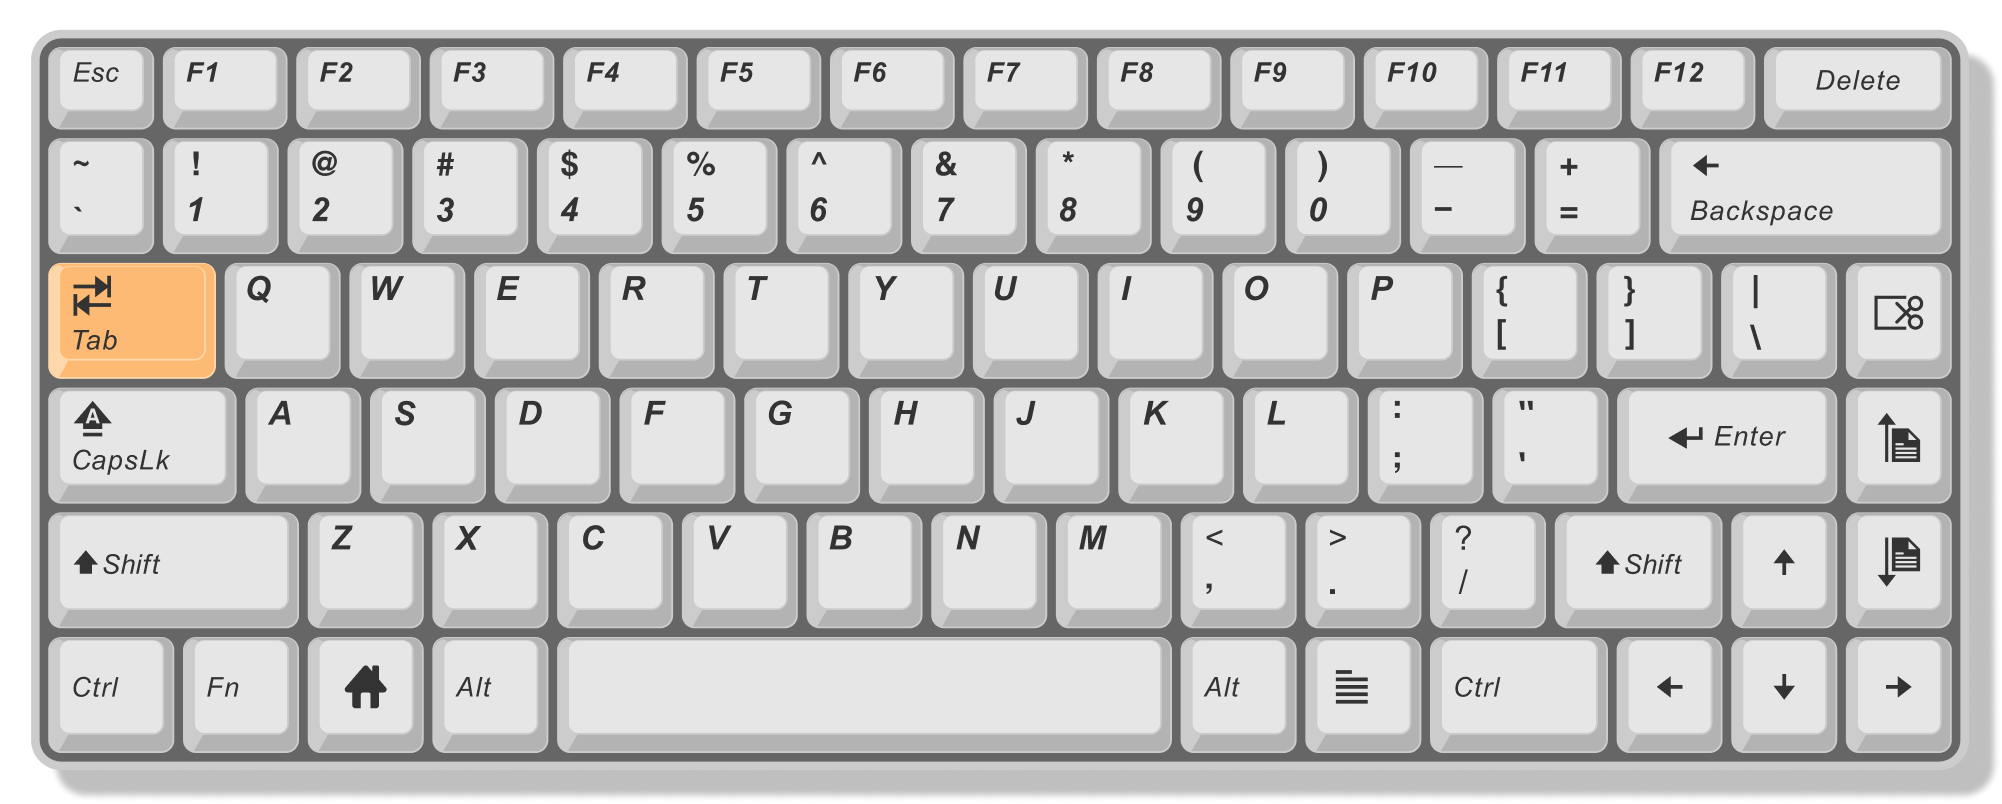 teclado_tabulador.jpg